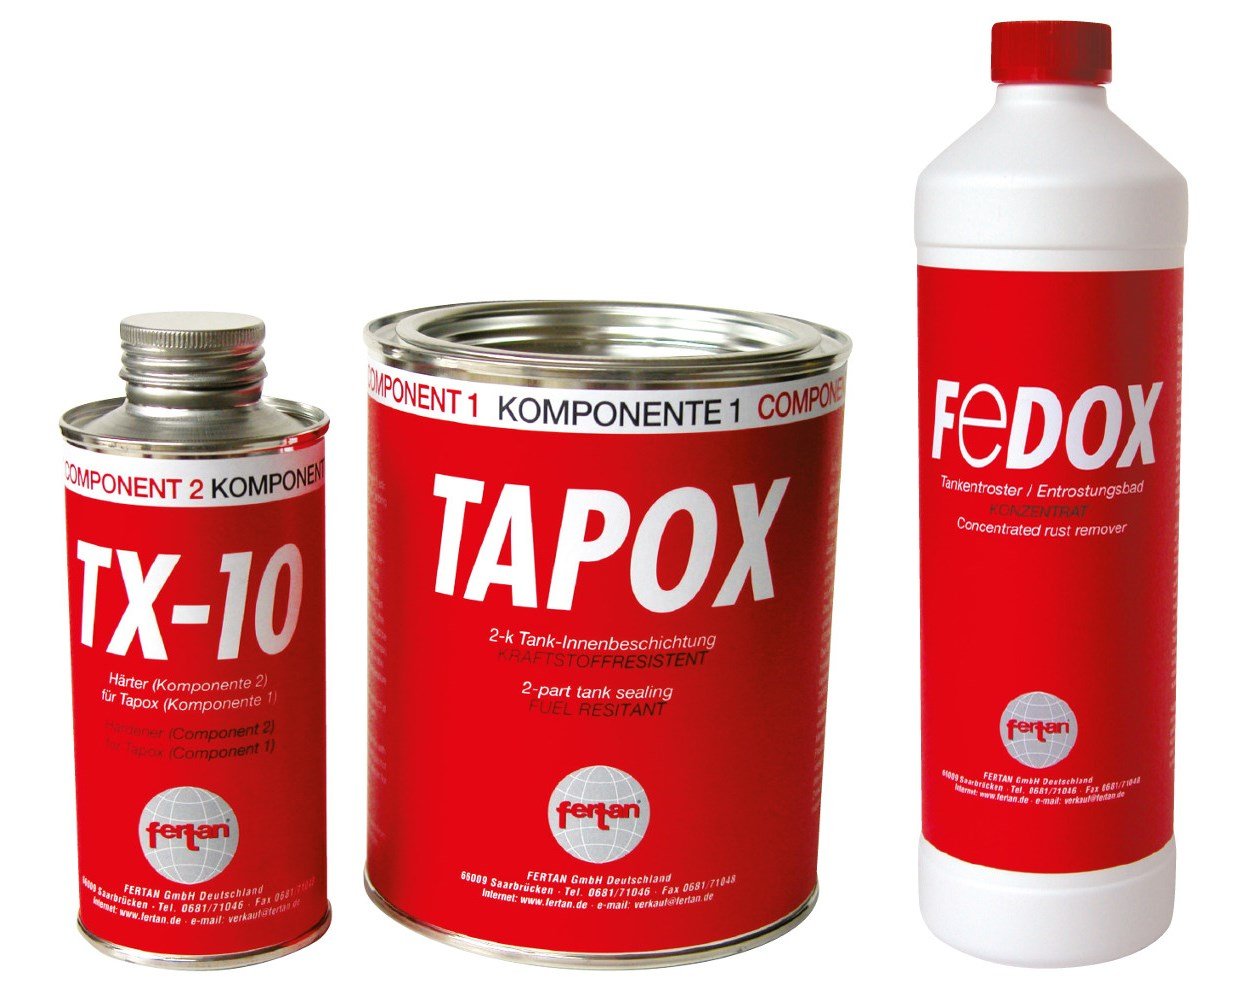 Set Fertan Tapox Tank-Innenbeschichtung & Fedox Tankentroster Tanksanierung von Set Fertan Tapox Tank-Innenbeschichtung & Fedox Tankentroster Tanksanierung